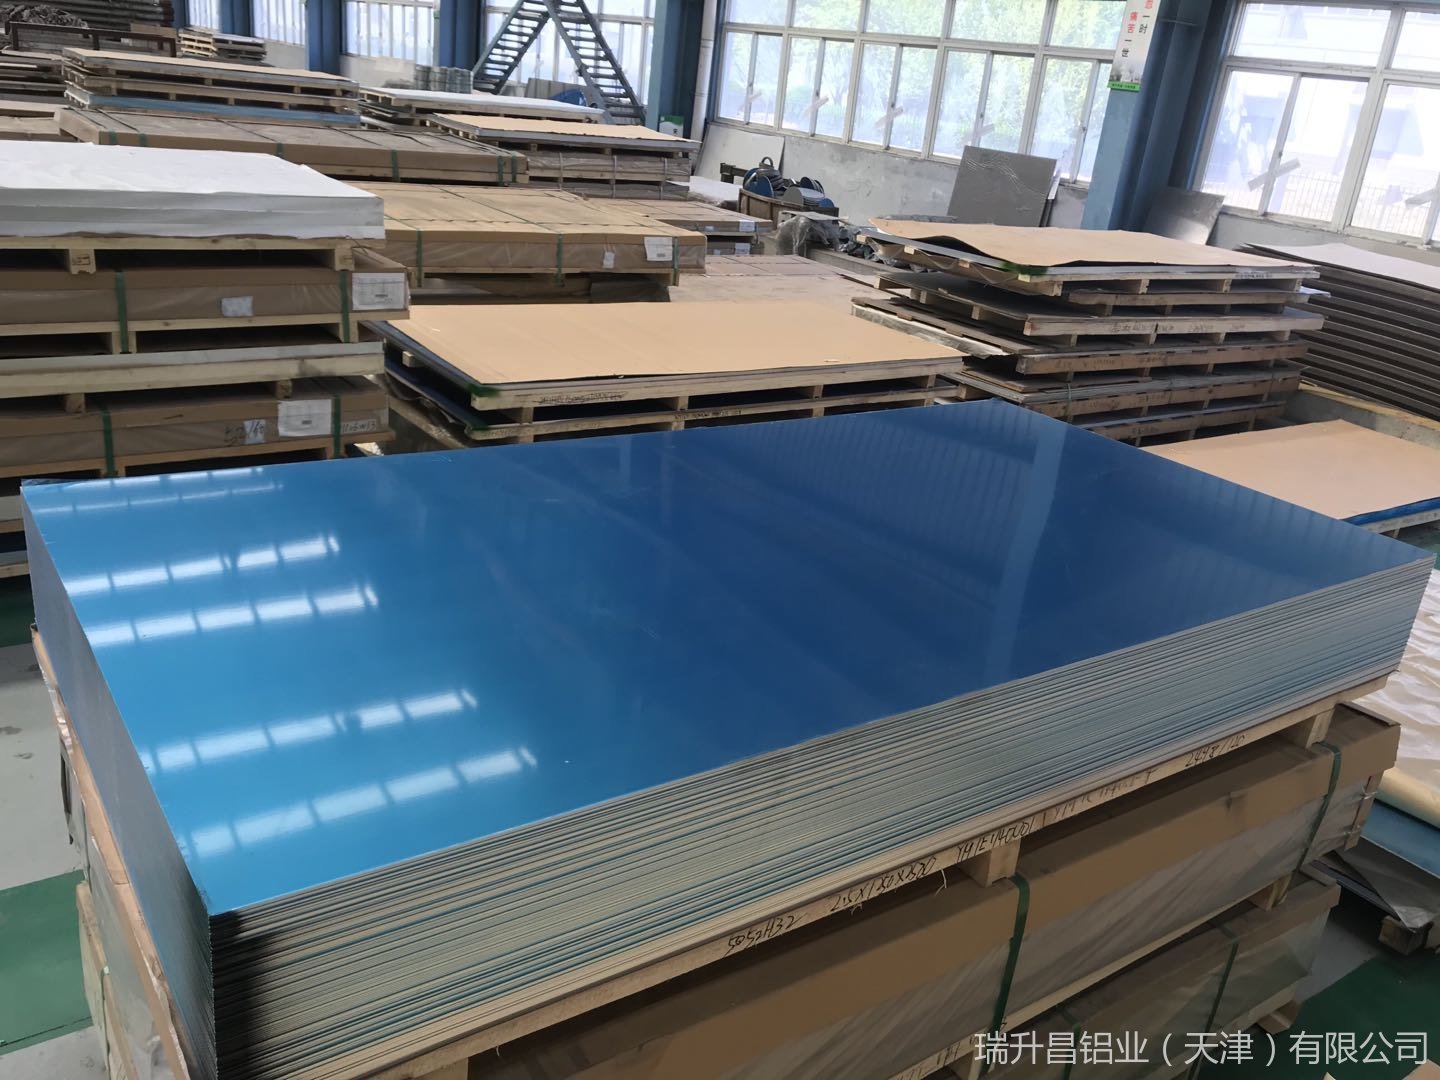 天津瑞升昌铝业供应2A12合金铝板 国标铝板2a12超硬铝价格 2a12h112铝板  LY12供应商厂家 成批出售可切割示例图12